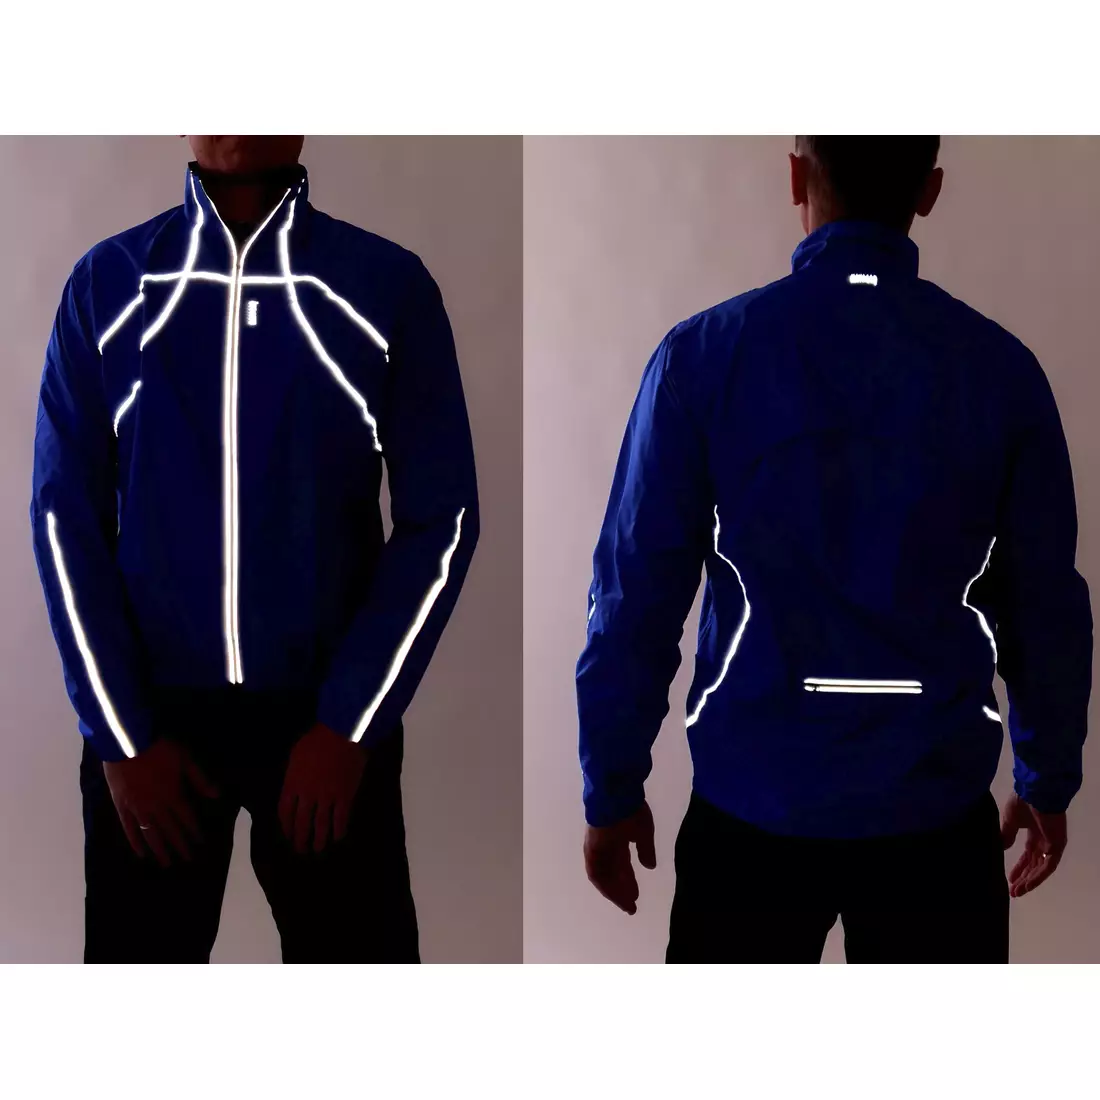 KAYMAQ J1 jachetă de ciclism de ploaie pentru bărbați, albastru